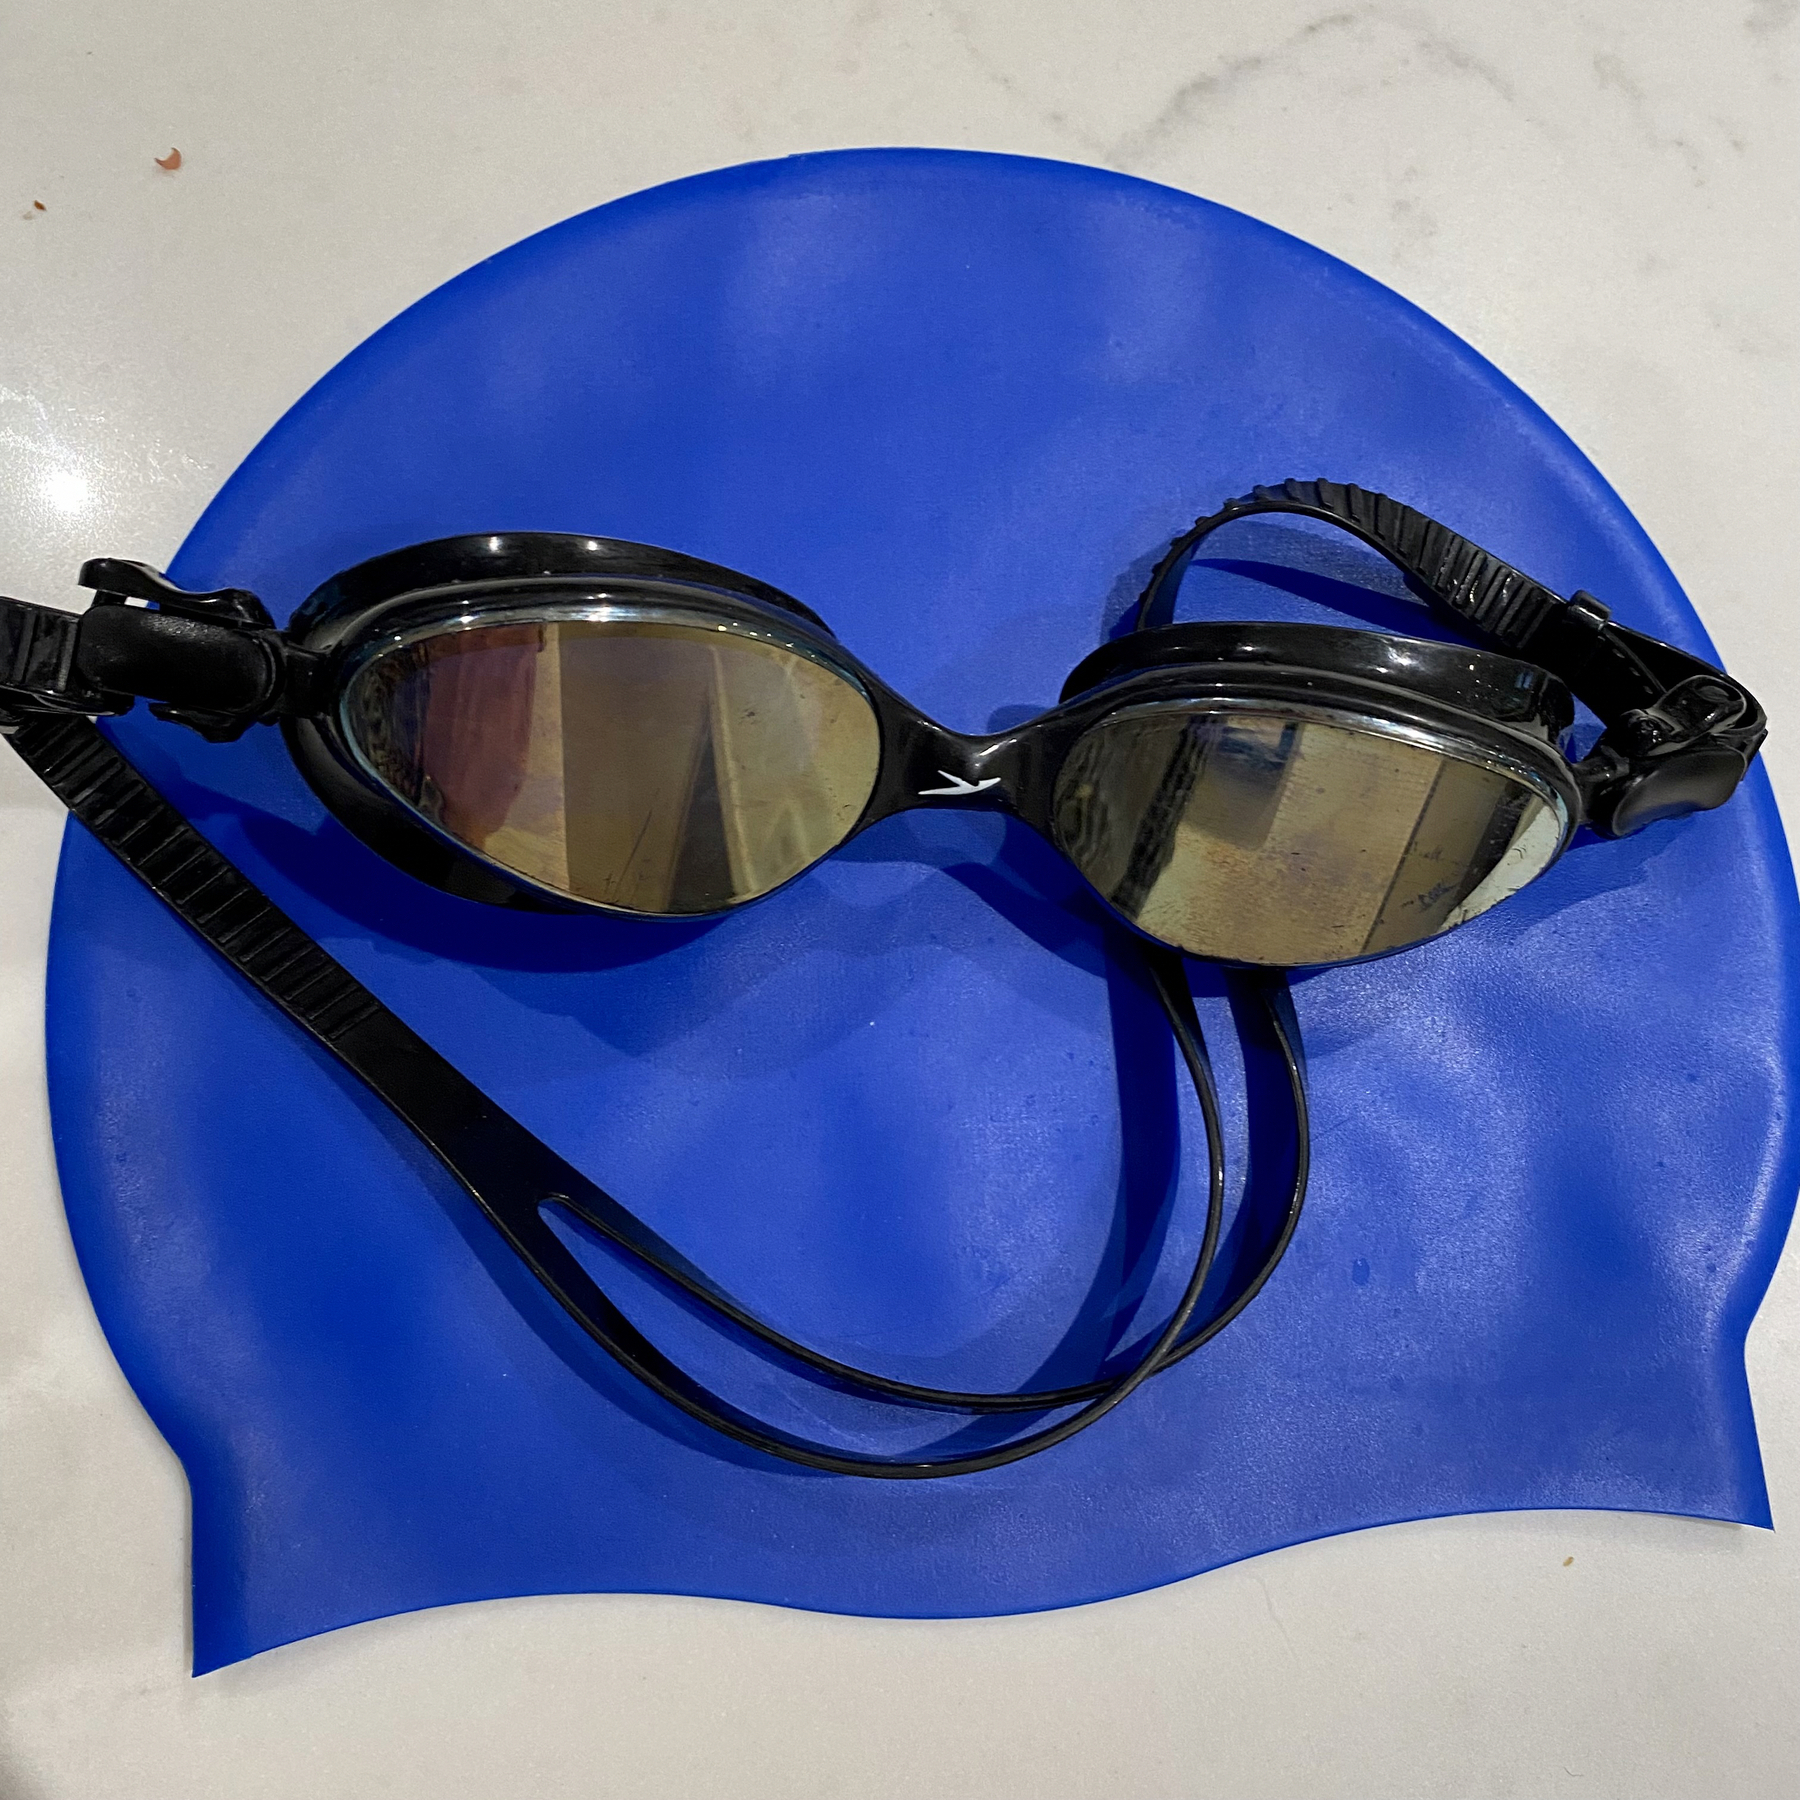 Swim goggles and cap